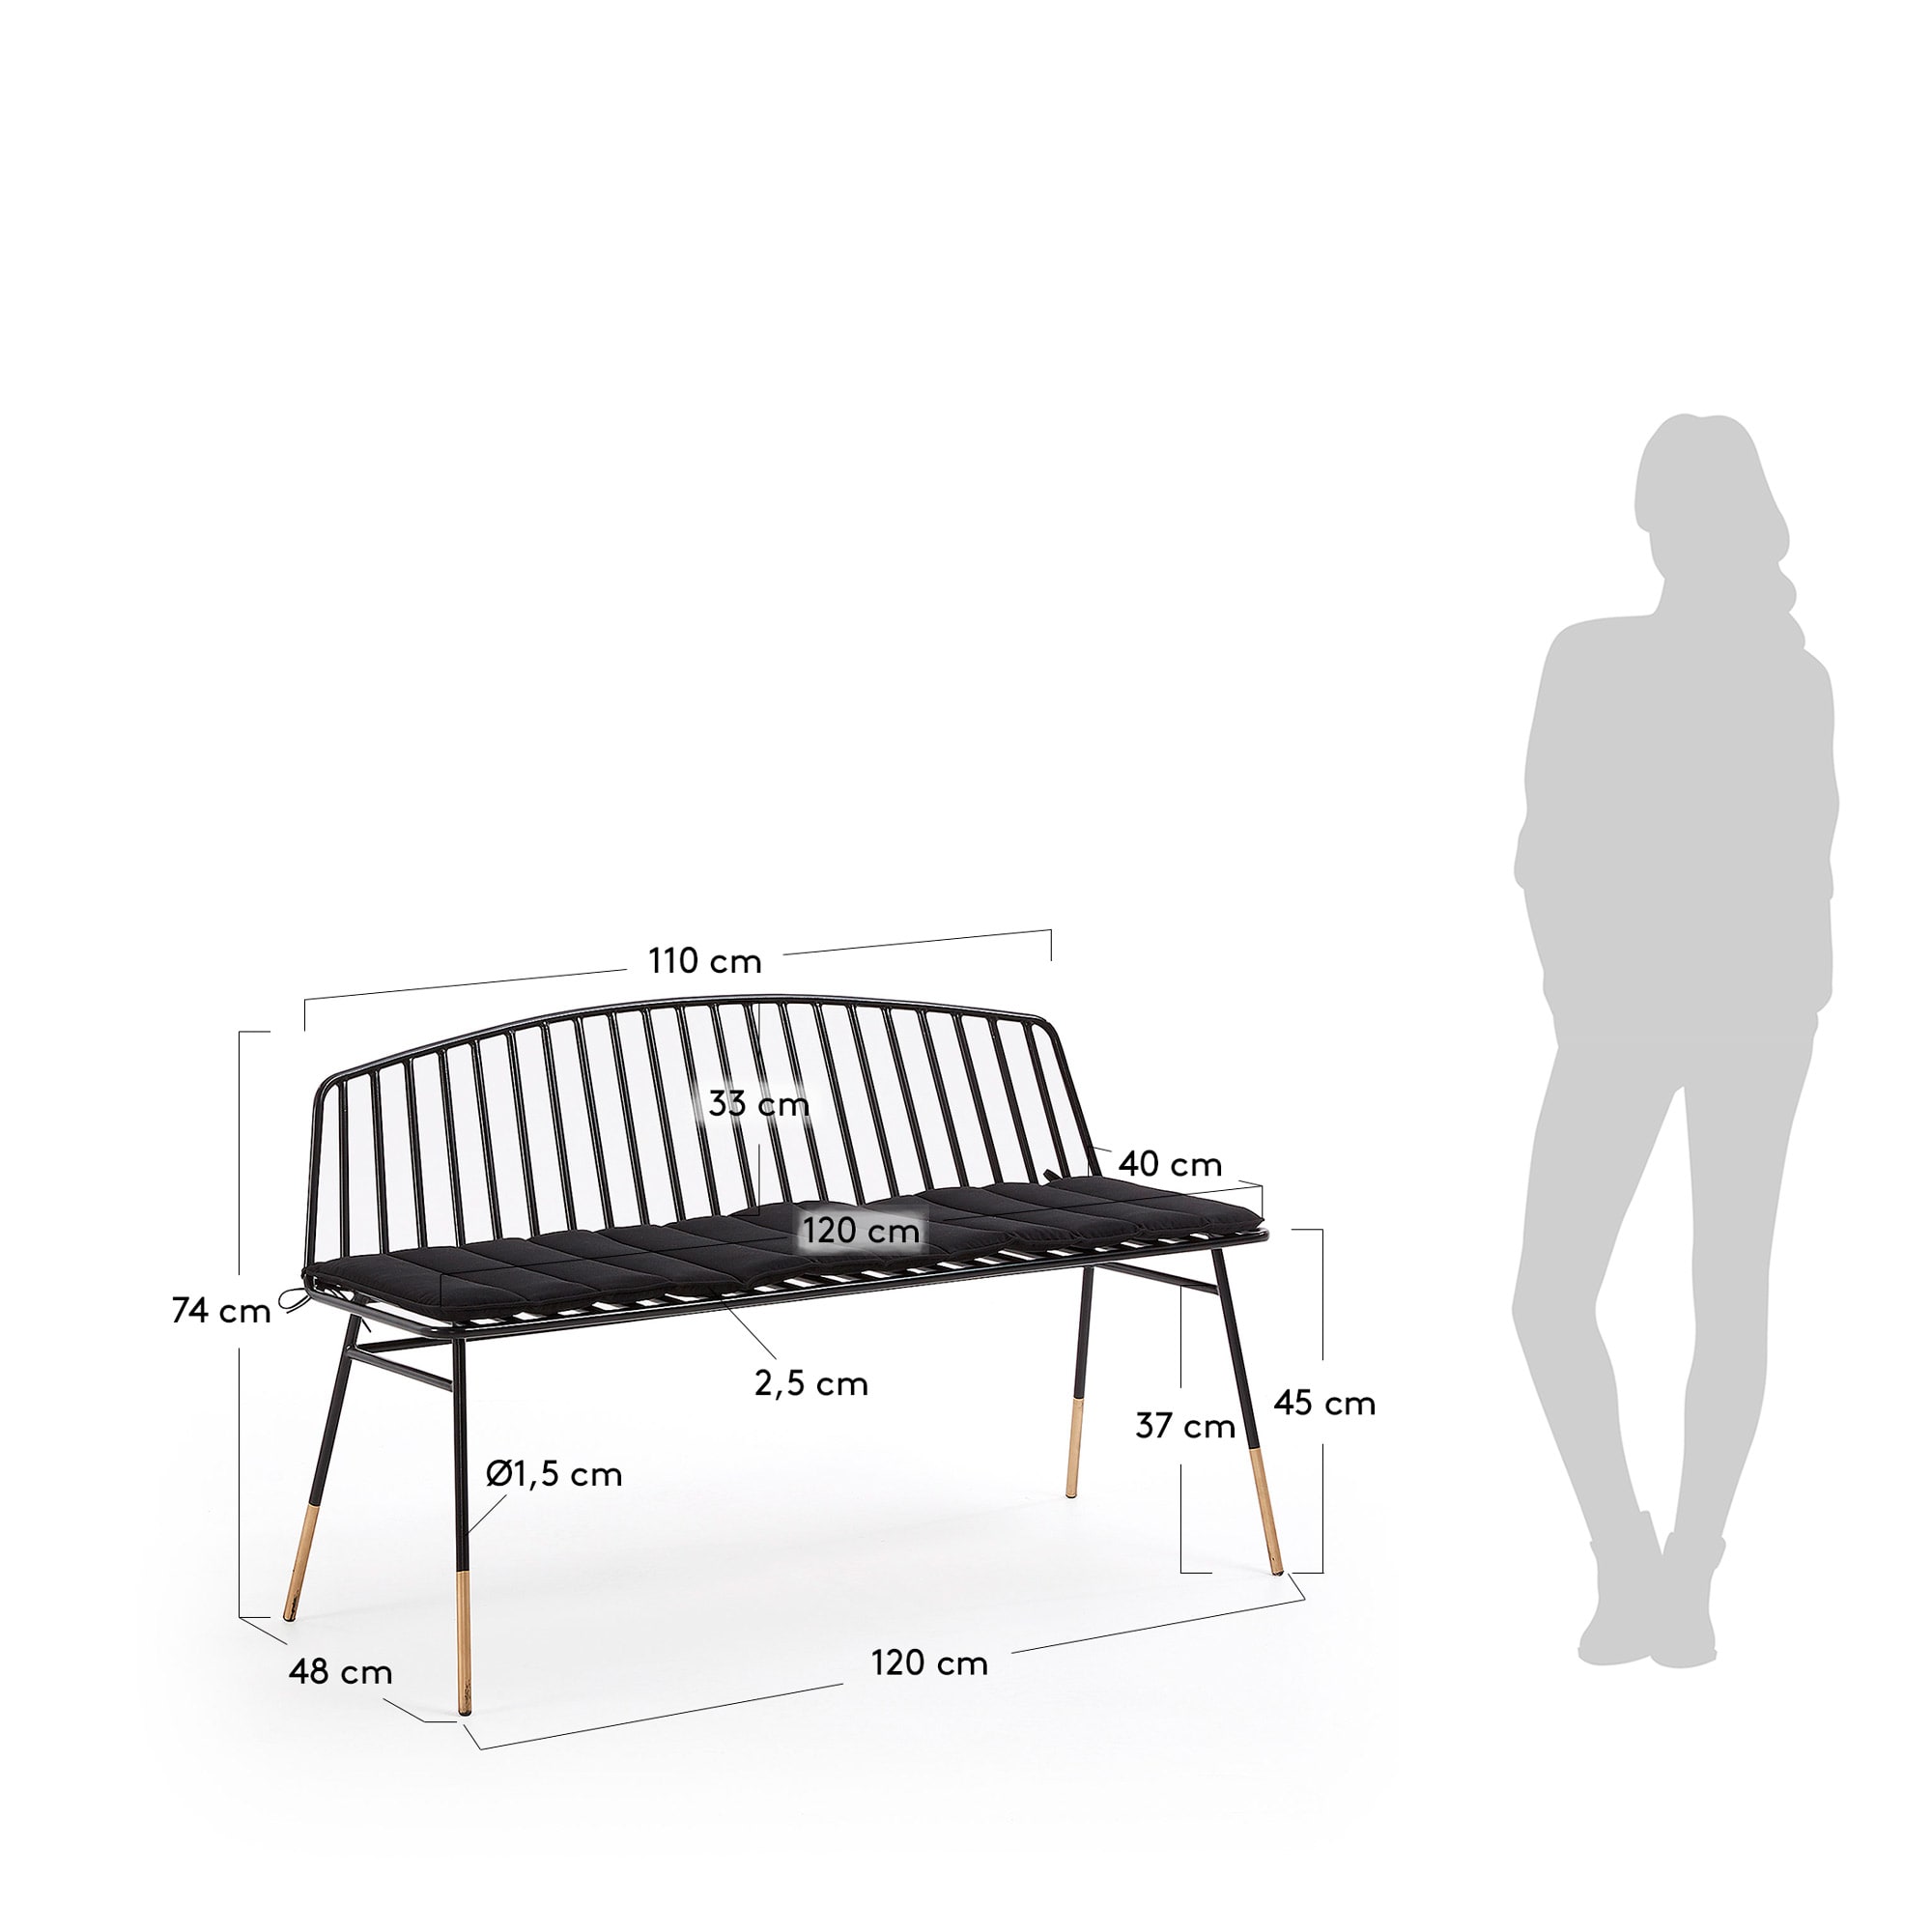 Siena bench 120 cm - sizes